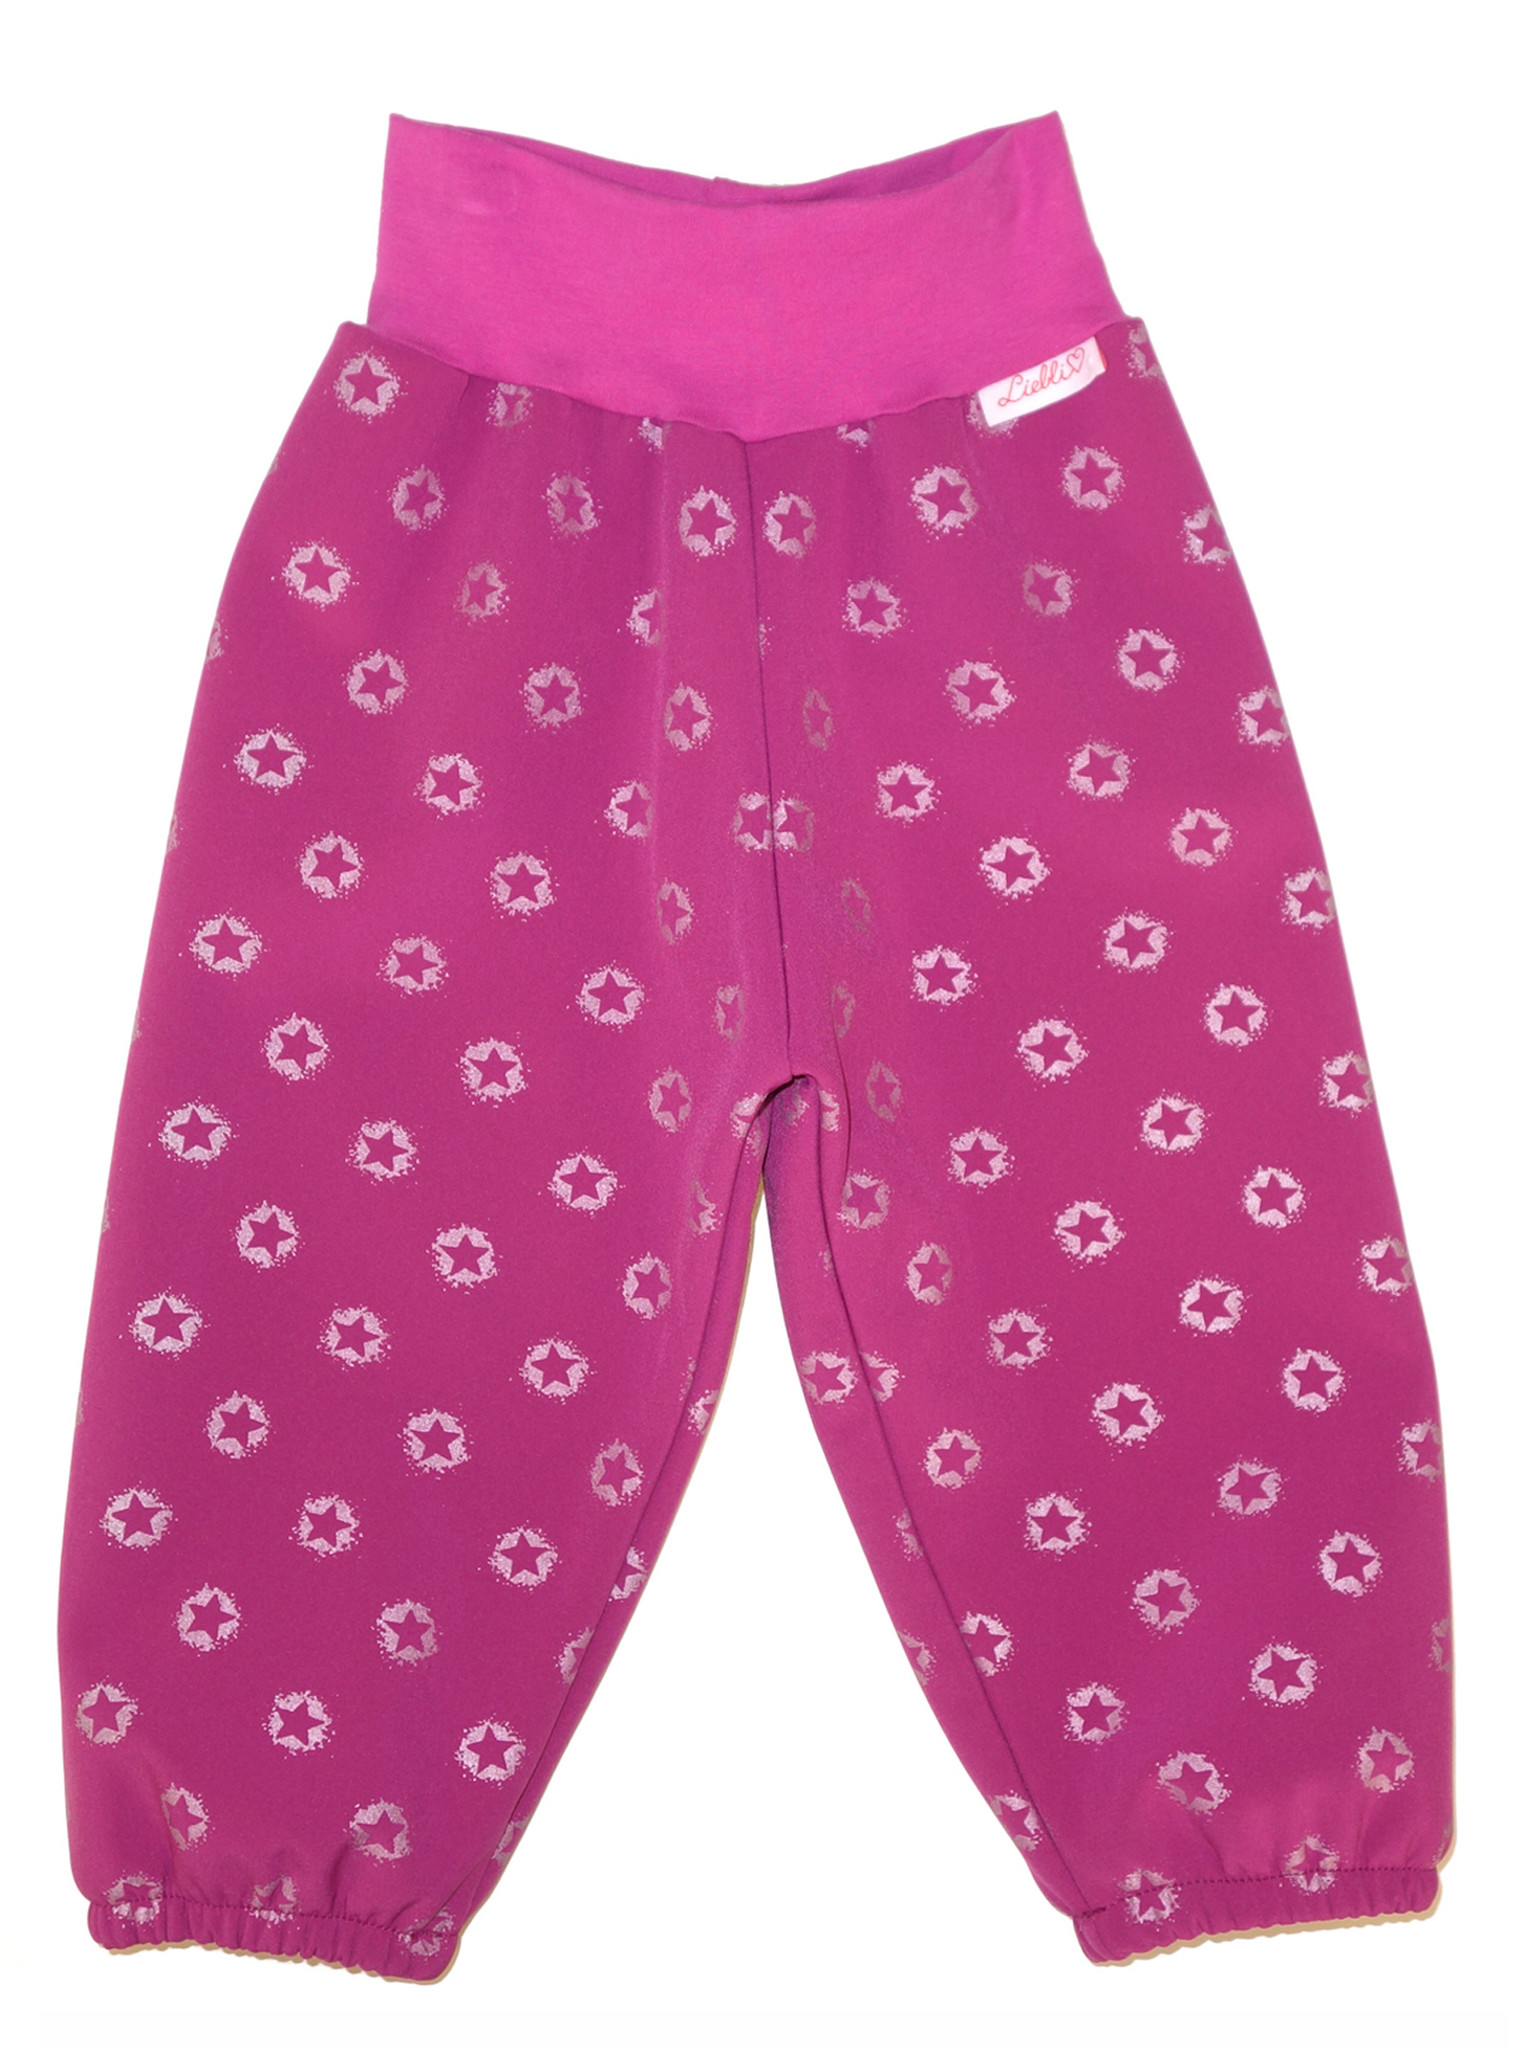 Softshell Hose für Kinder, Outdoor Hose, Regenhose, pink mit reflektierenden Sternen